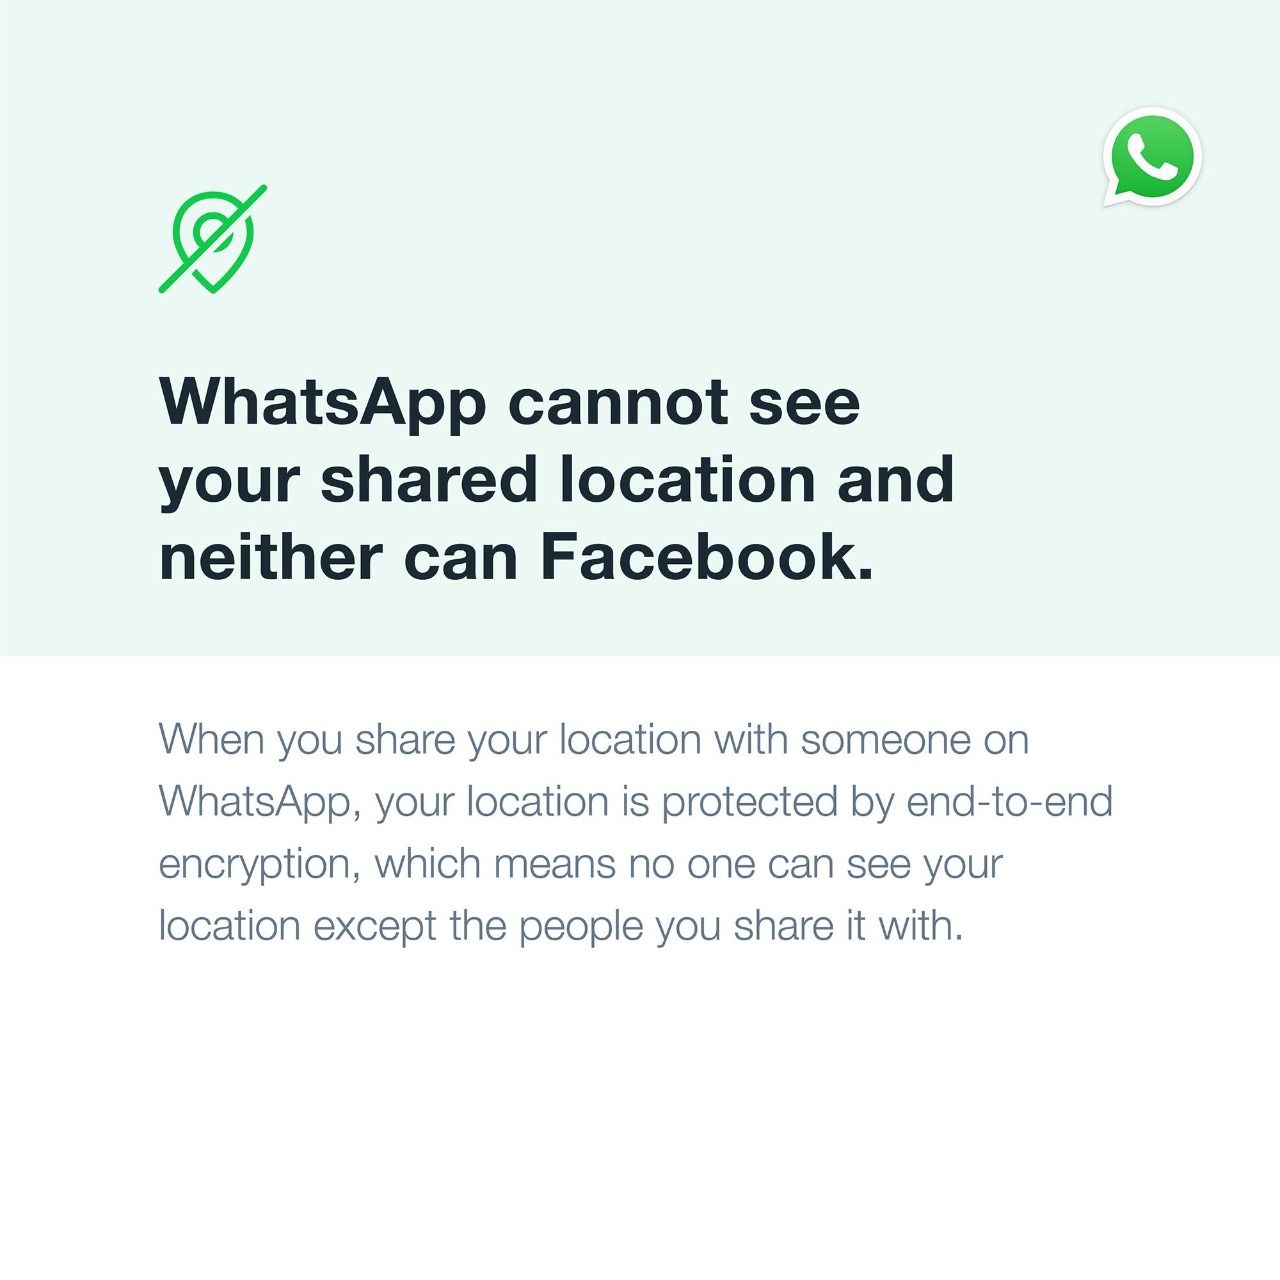 WhatsApp Image 2021-01-12 at 12.31.14